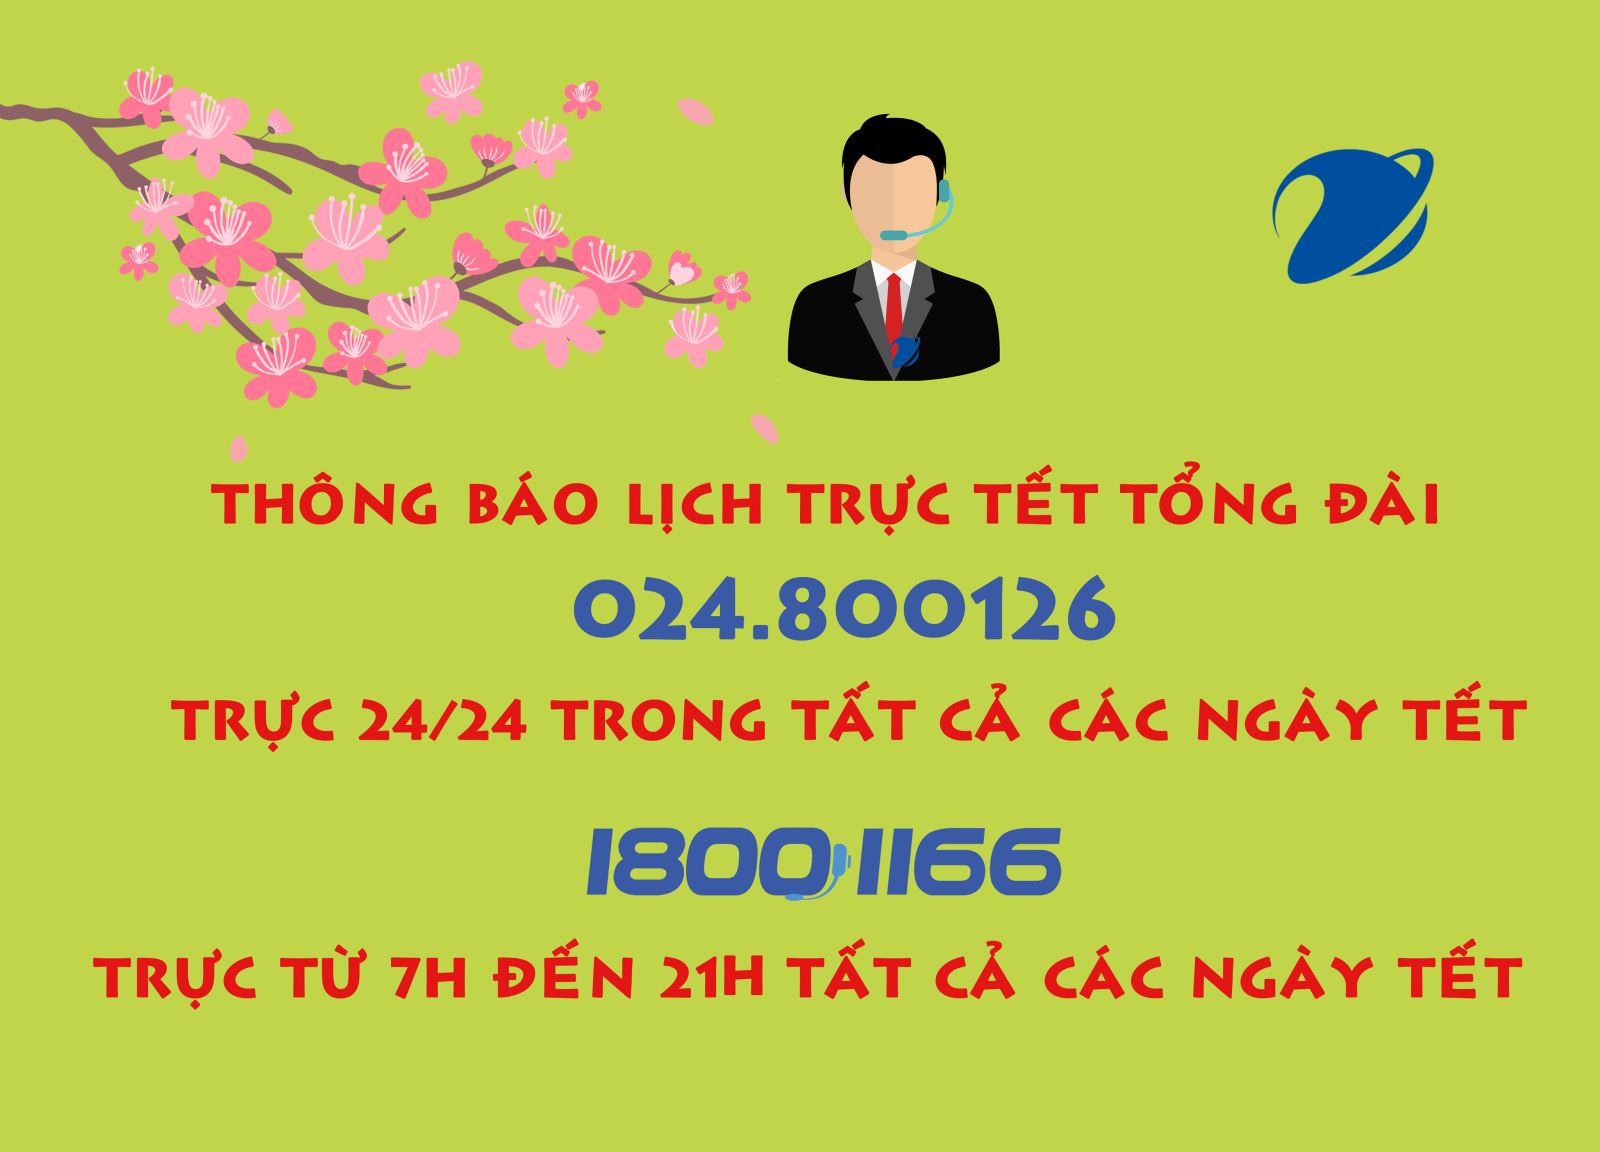 Lịch trực tết Kỷ Hợi 2019 tại các điểm giao dịch VNPT Hà Nội